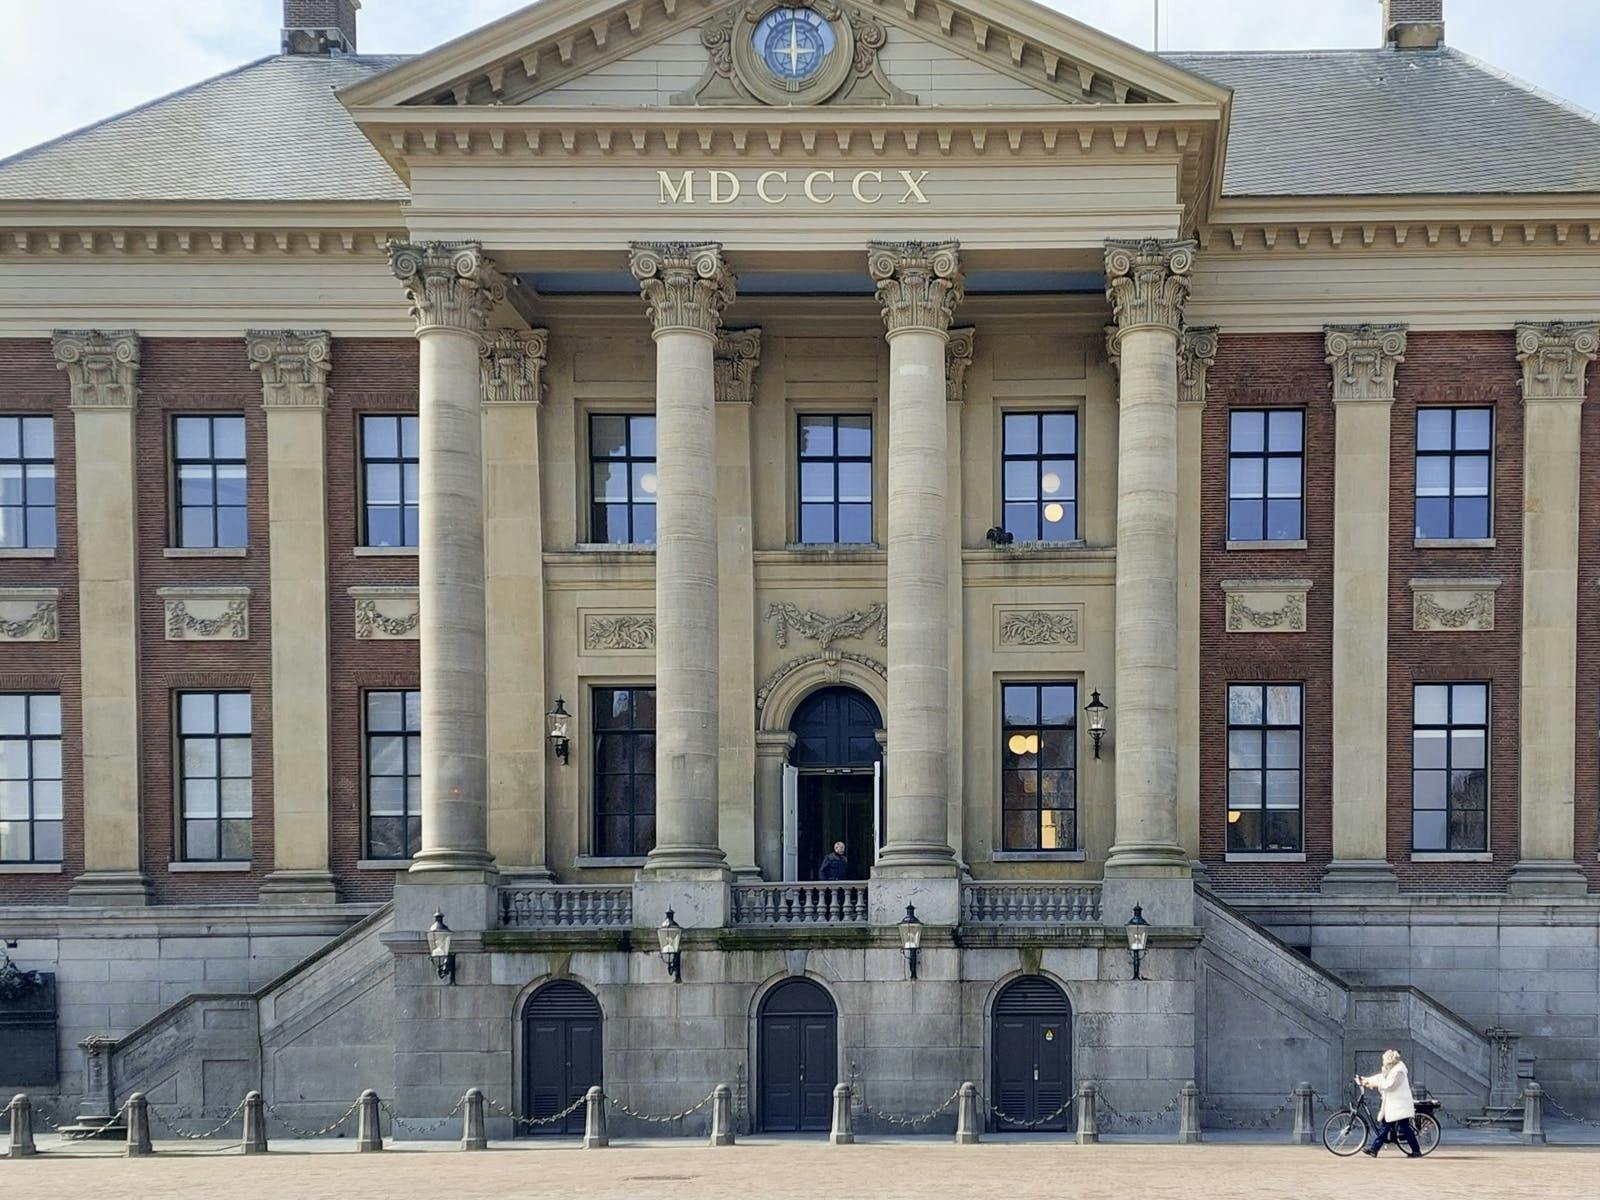 Passeggiata interattiva alla scoperta del centro storico di Groningen